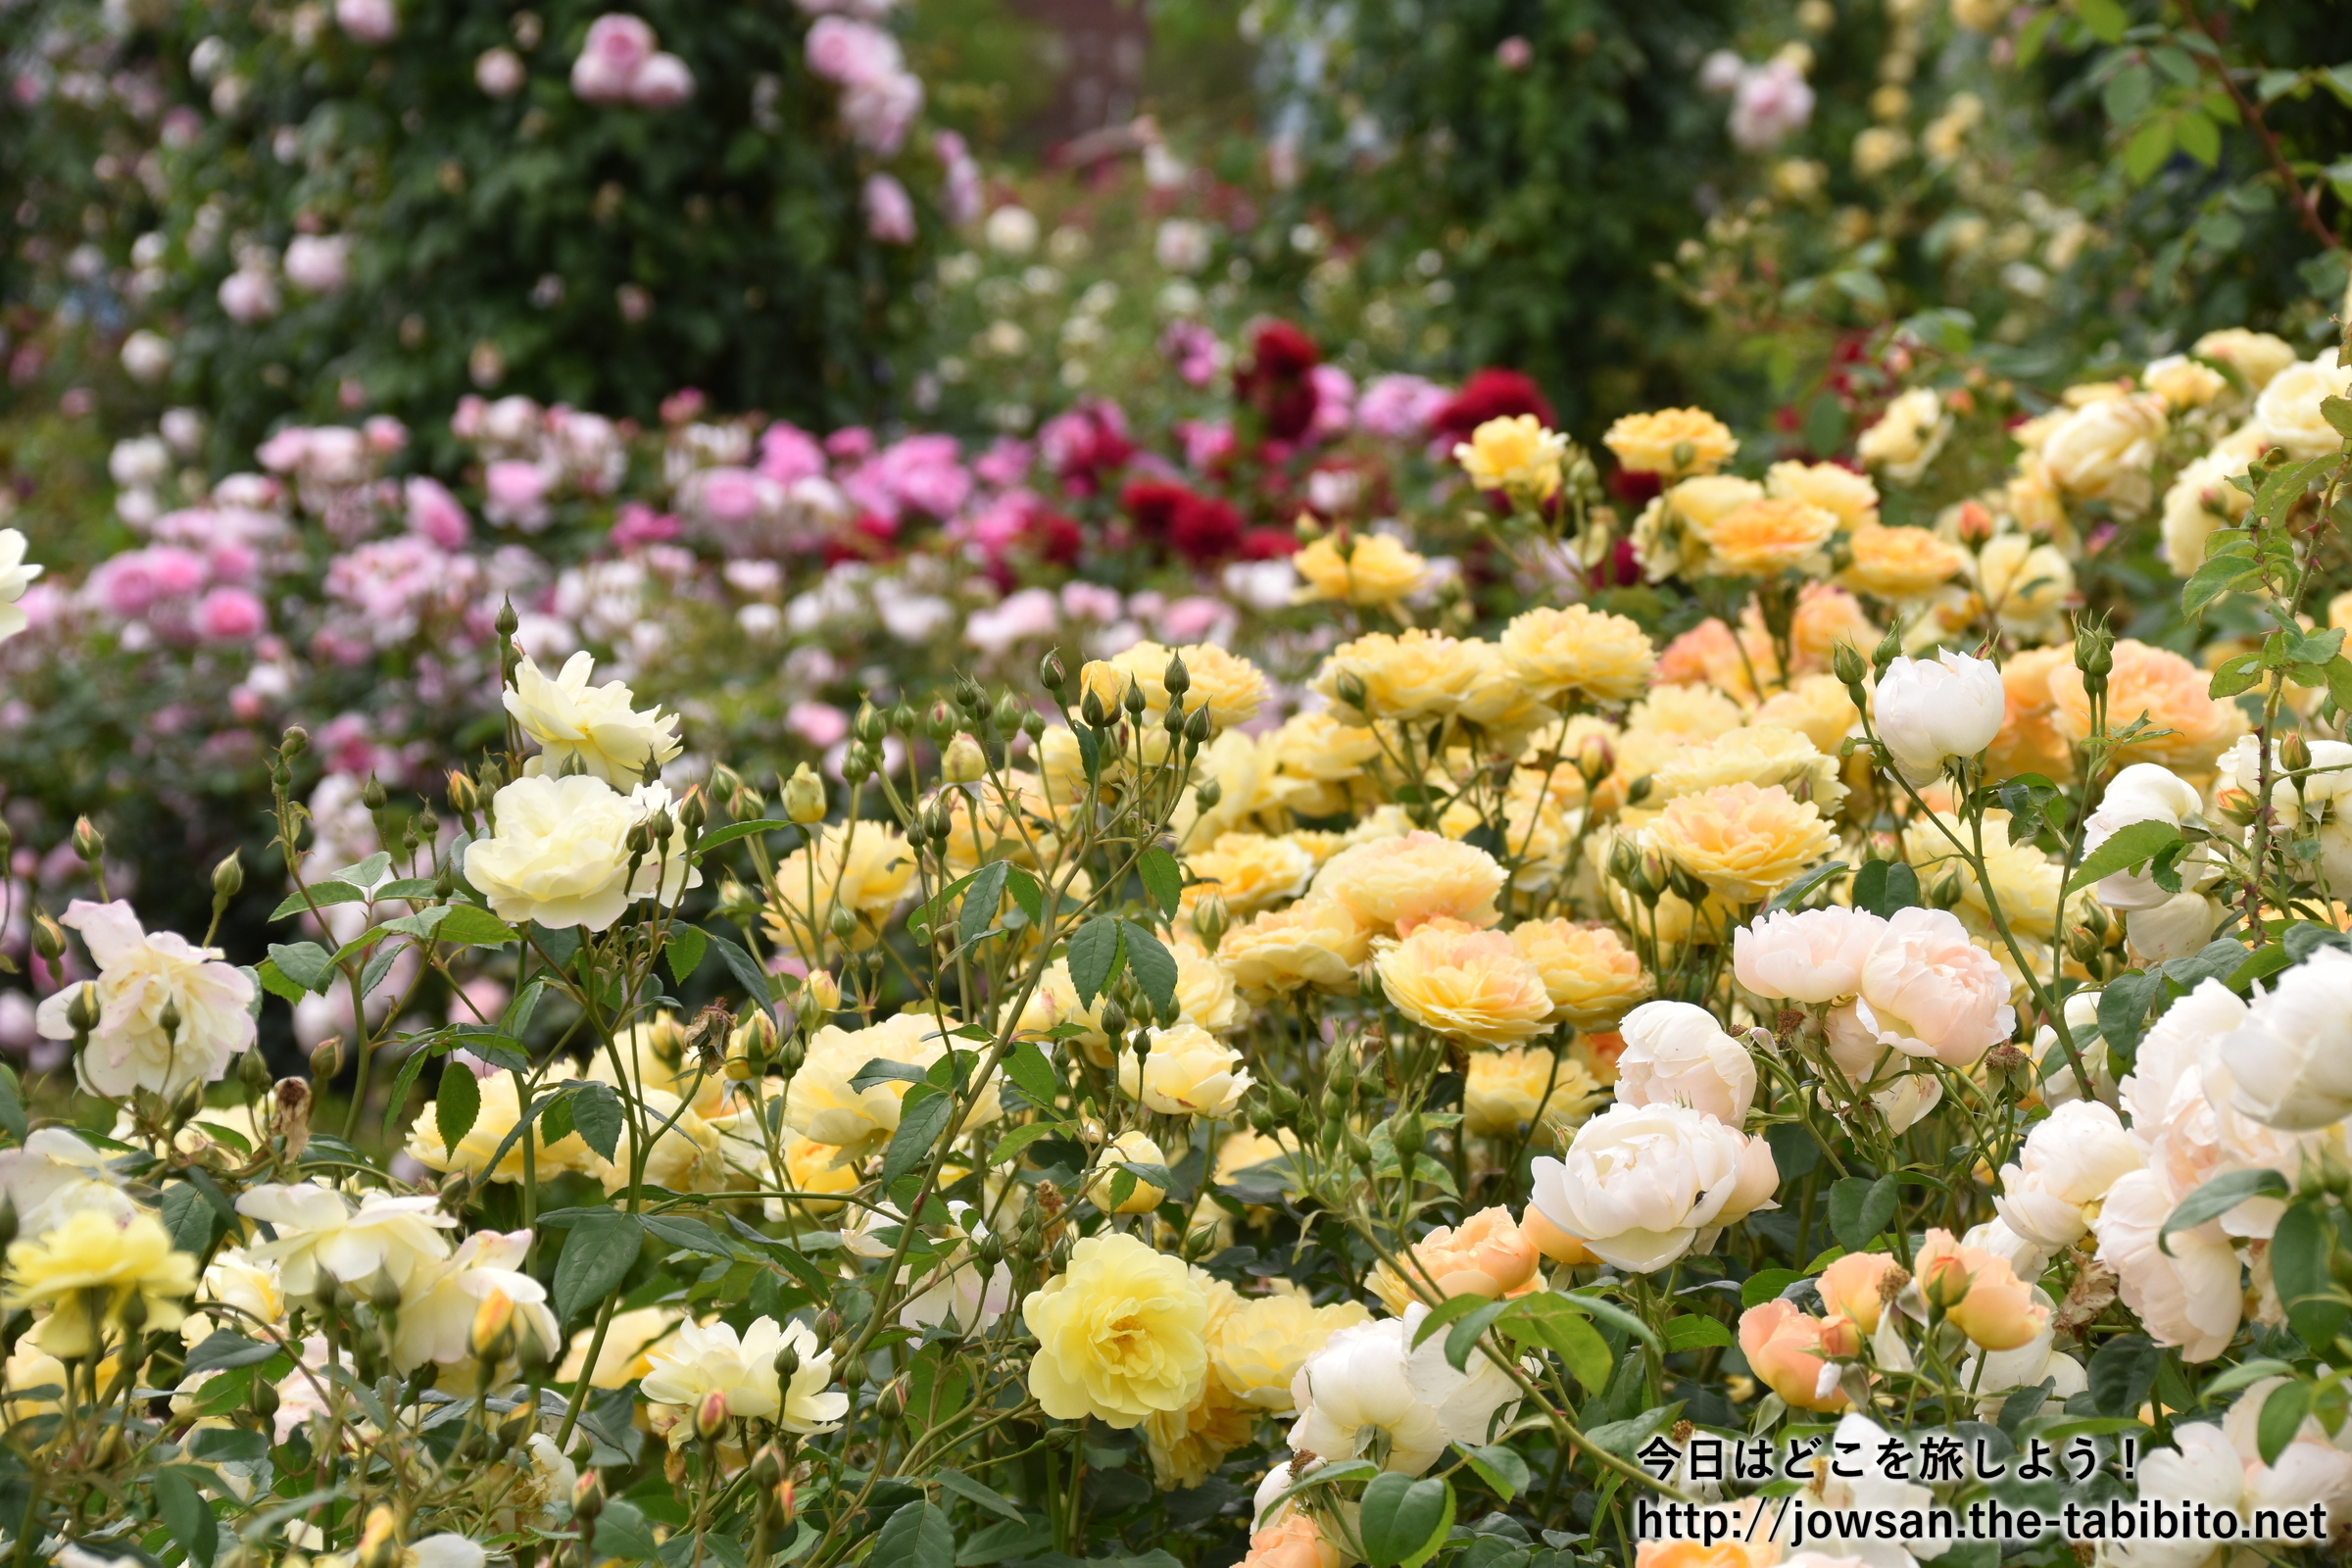 大阪 泉南のデビッド オースチンのイングリッシュローズガーデンへバラを見に散策ぶらり旅 今日はどこを旅しよう